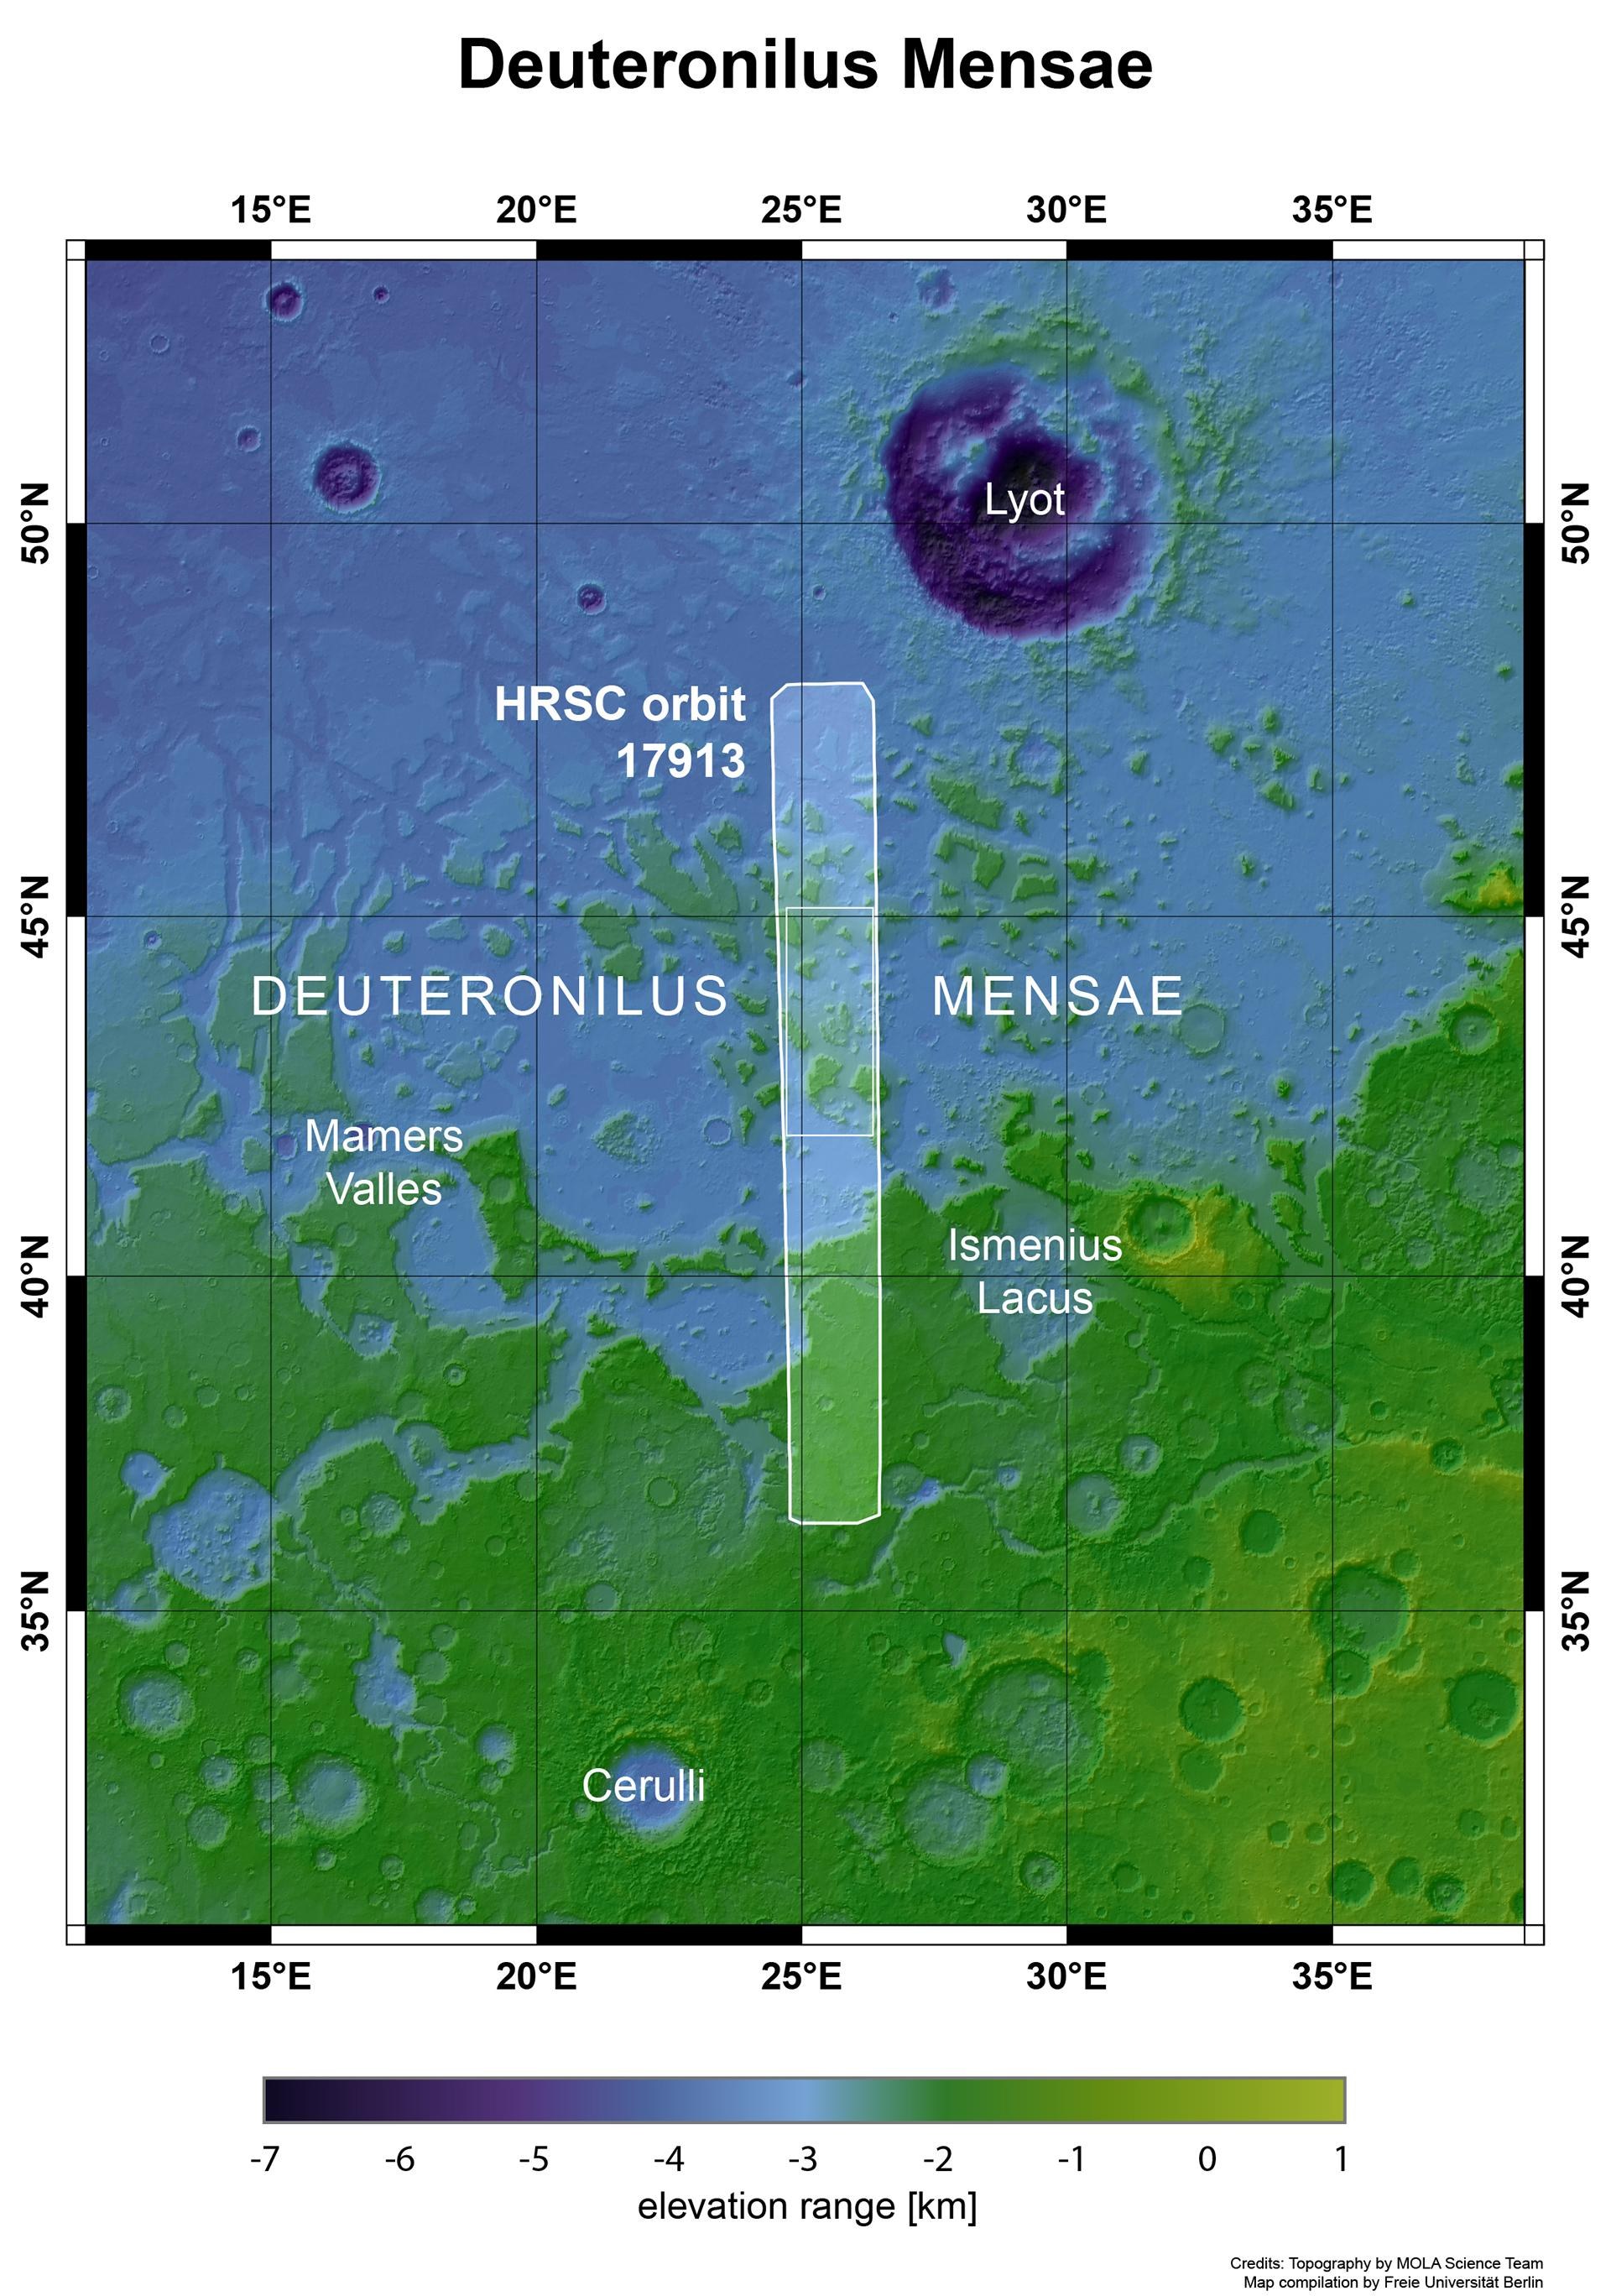 Deuteronilus Mensae, Mars: Übergangszone zwischen Hoch- und Tiefland